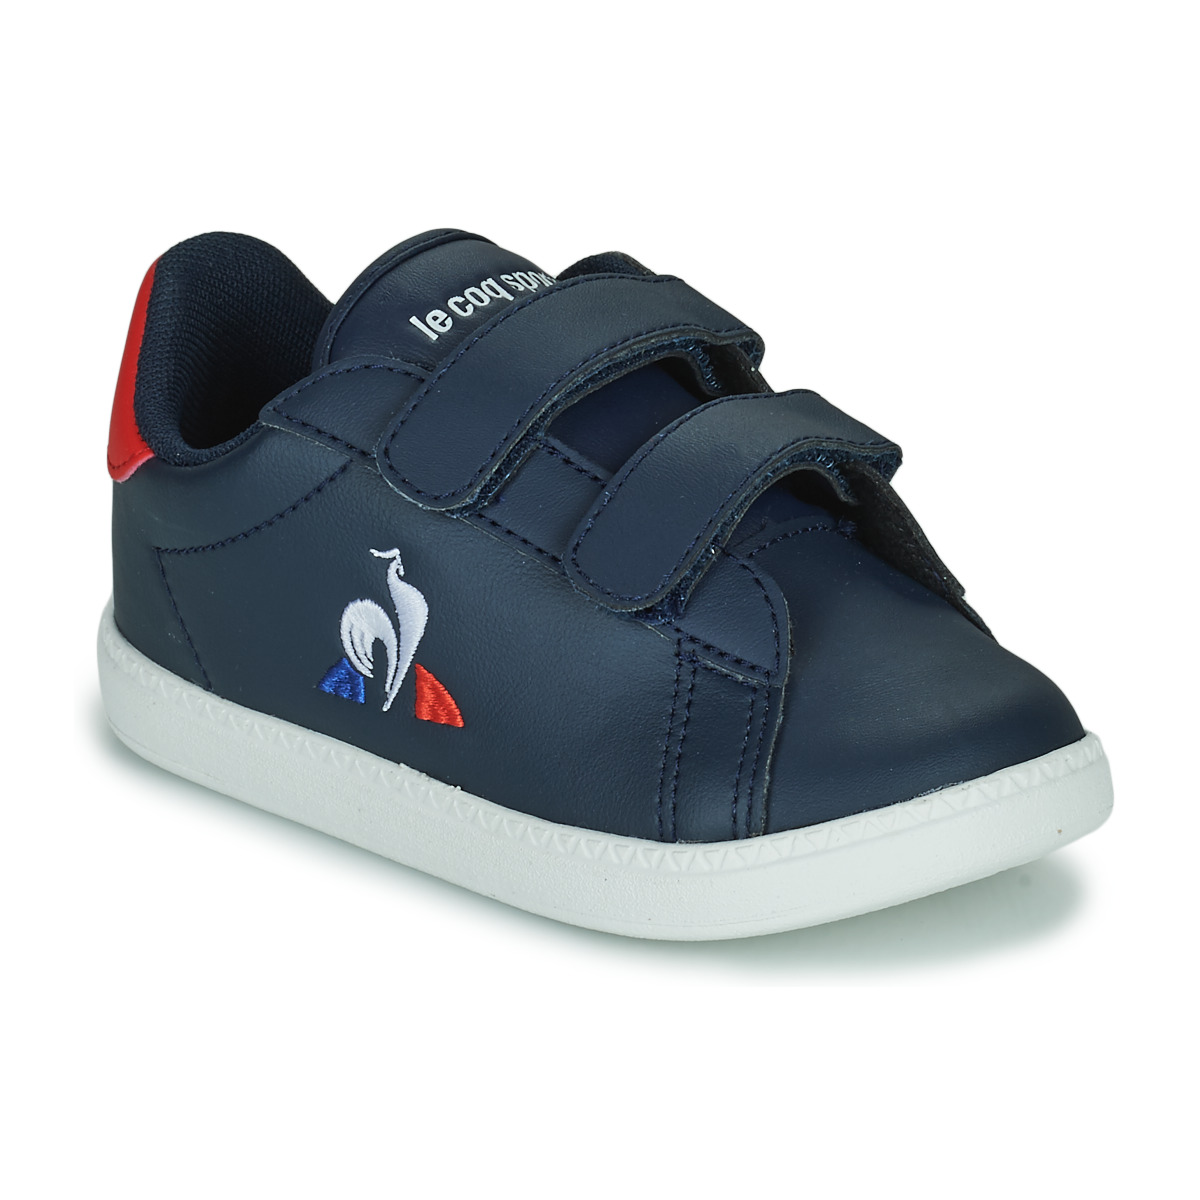 Zapatos Niños Zapatillas bajas Le Coq Sportif COURTSET INF Azul